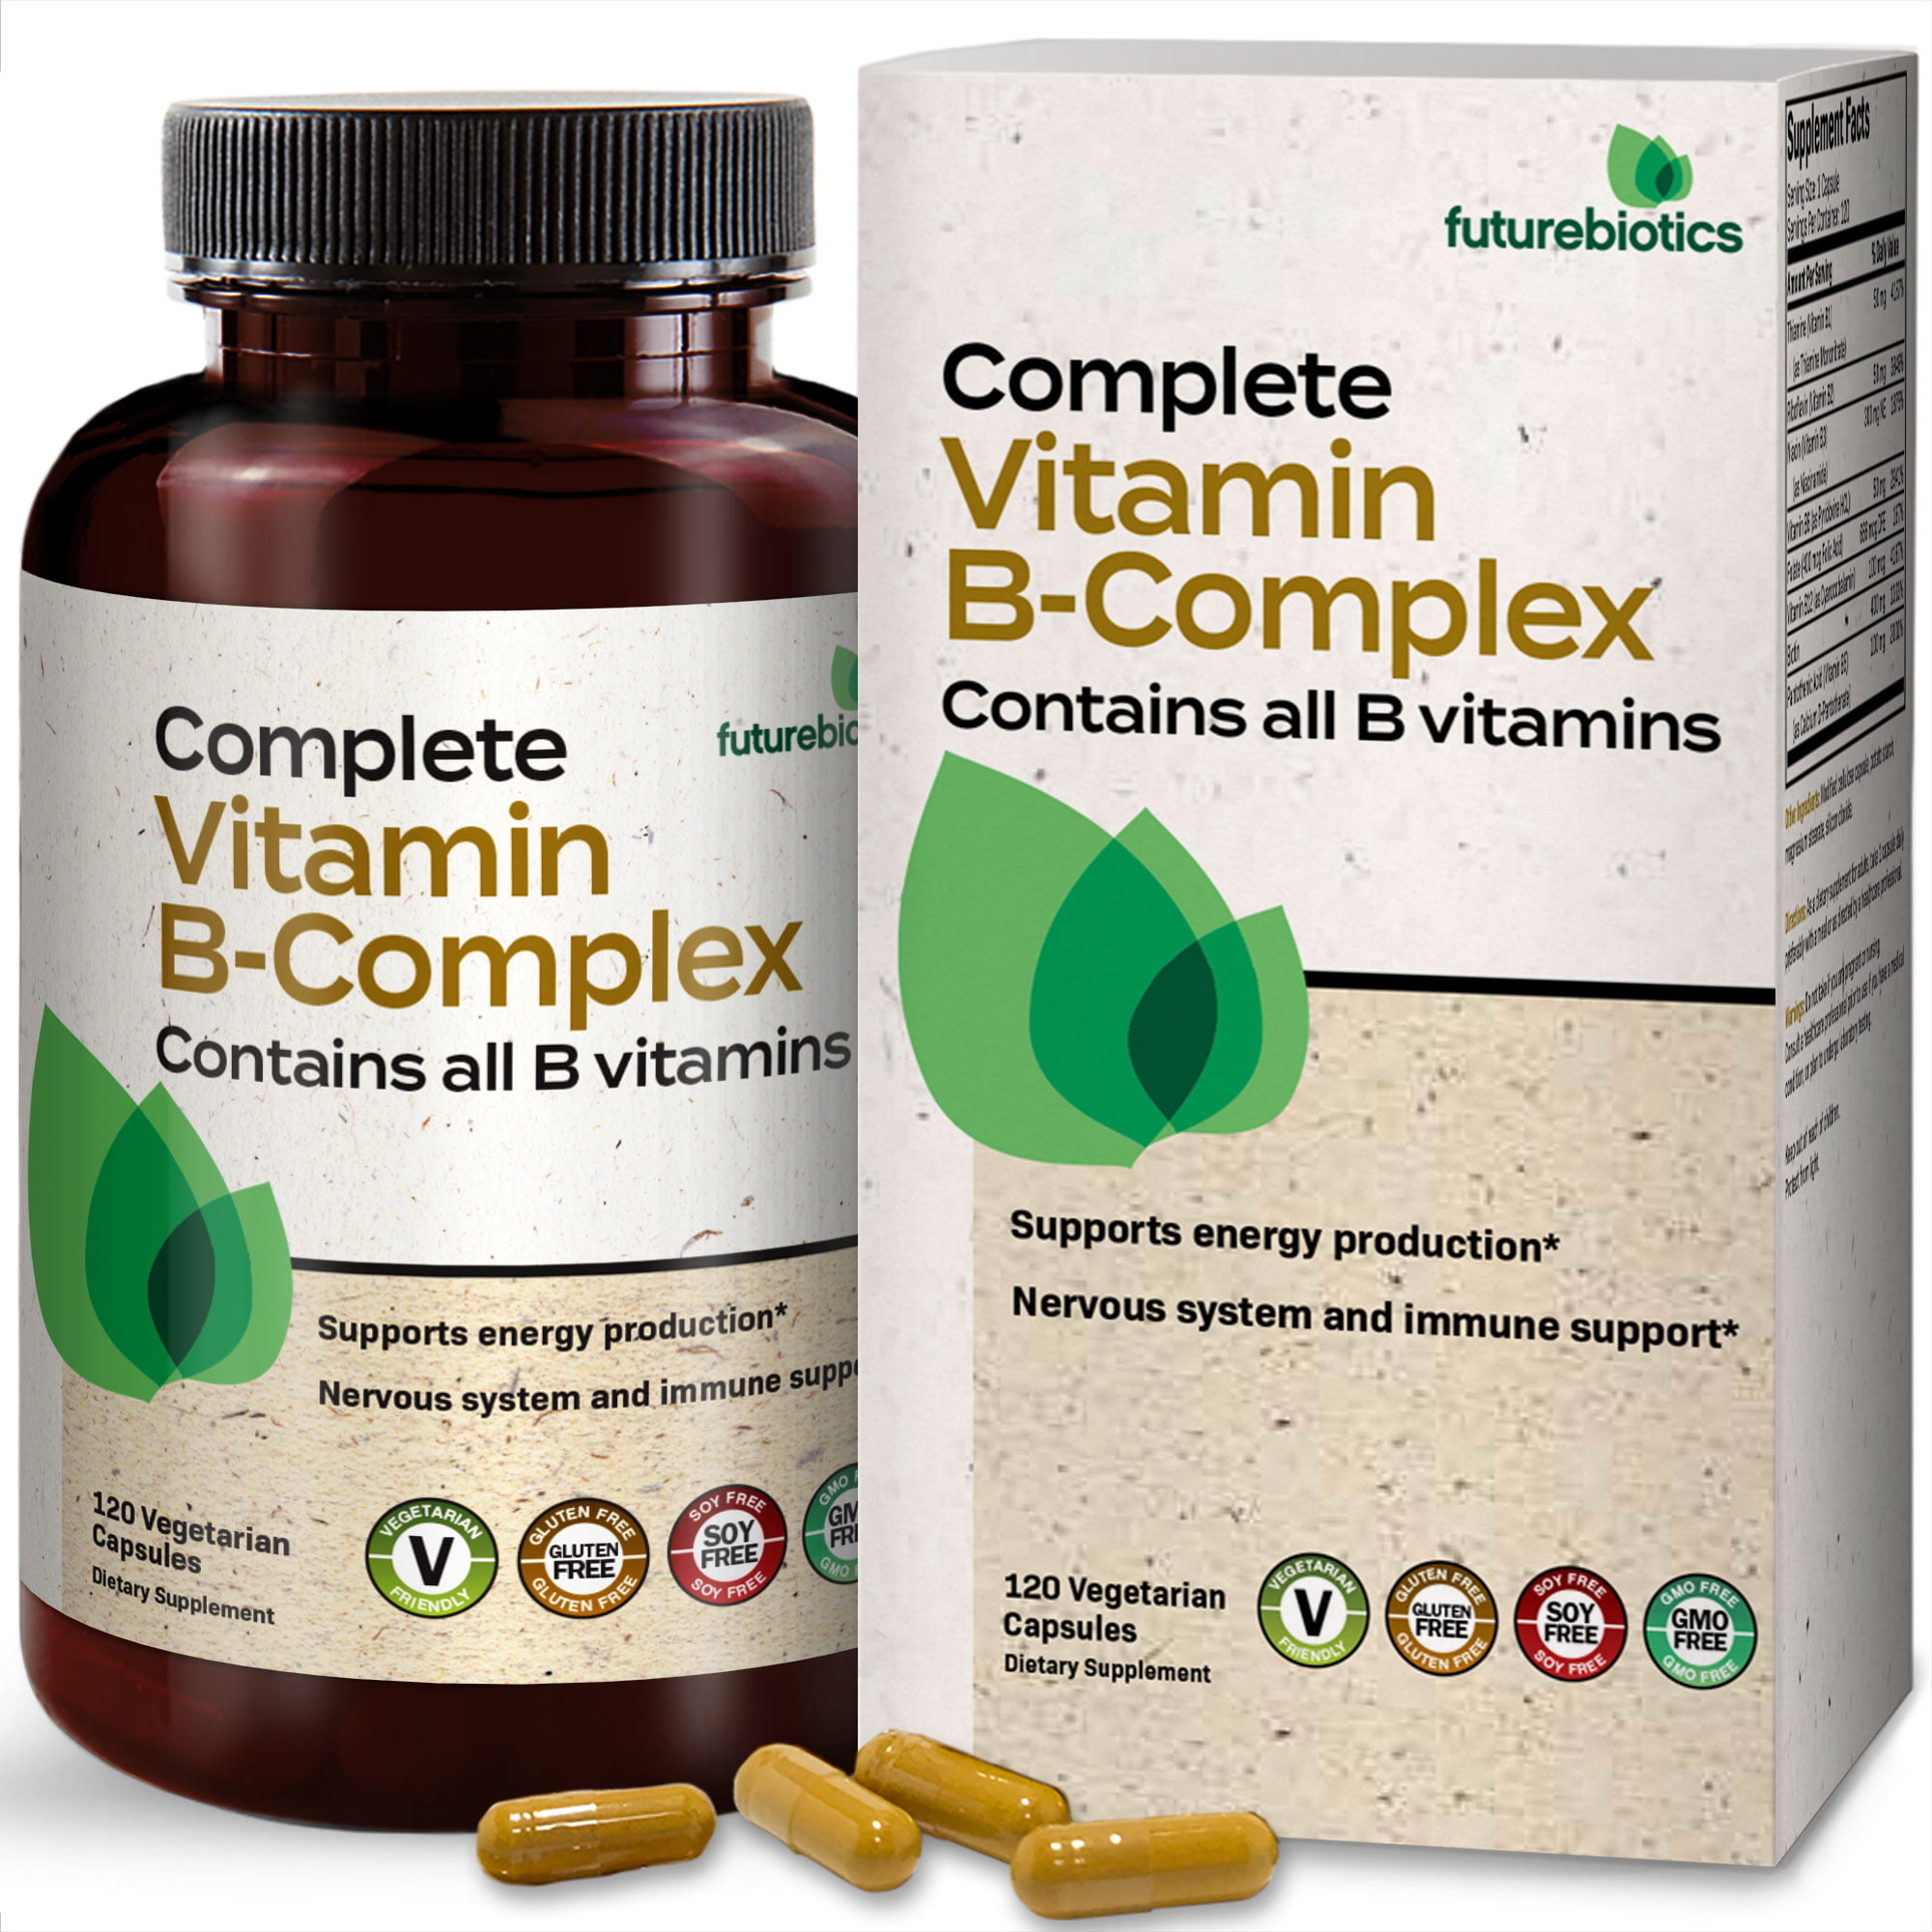 Futurebiotics Complete Vitamin B Complex (Vitamin B1, B2, B3, B6, B9 - Acid, B12) All B Vitamins, 60 Capsules - Walmart.com